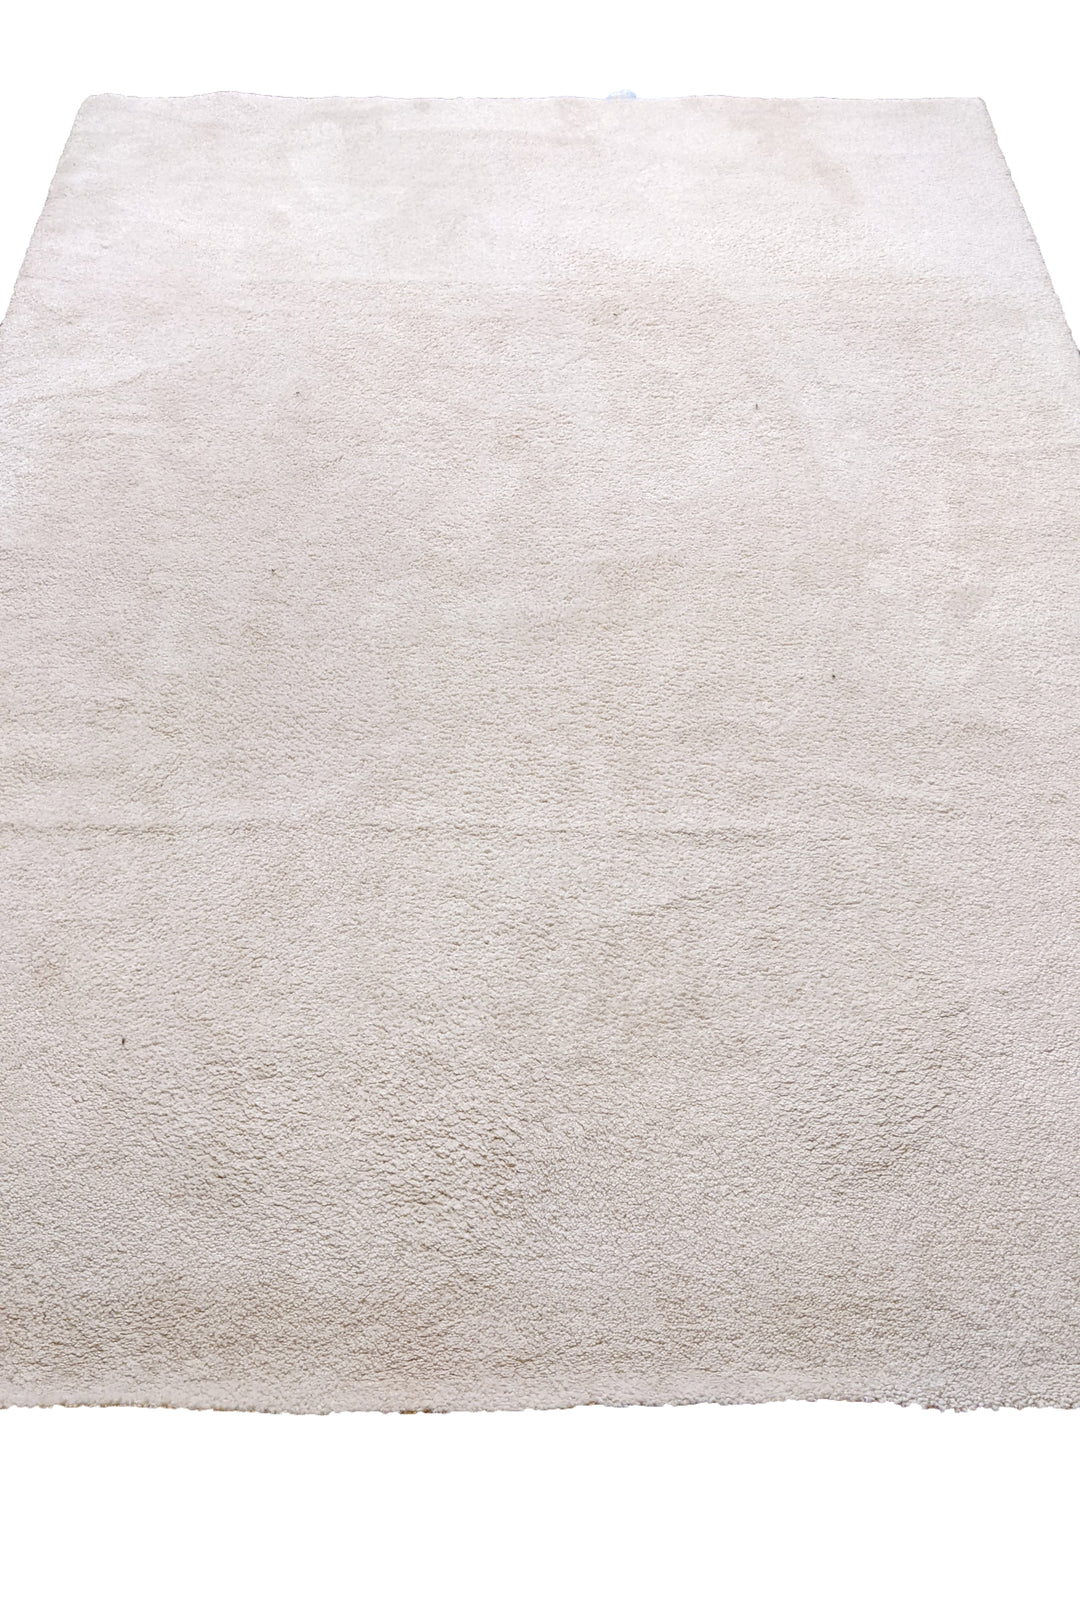 Hush - Size: 7.10 x 5.7 - Imam Carpet Co